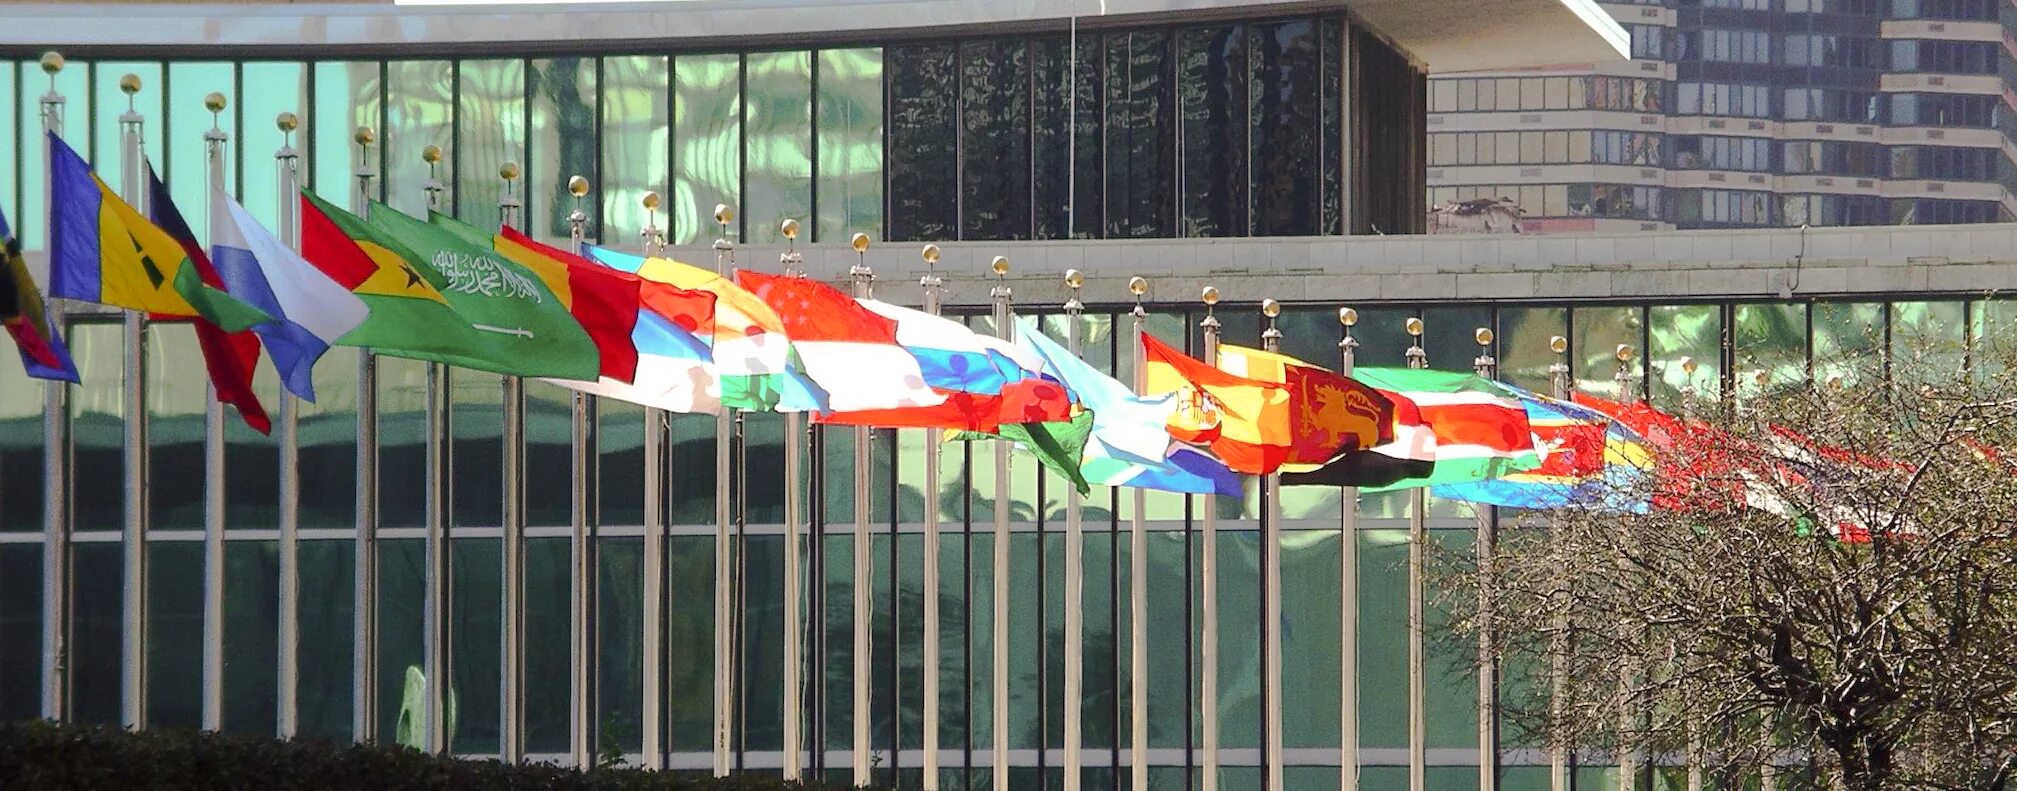 Здание ООН В Нью-Йорке. Флаг на здании. Флаг ООН. Флаги у здания ООН. Около оон